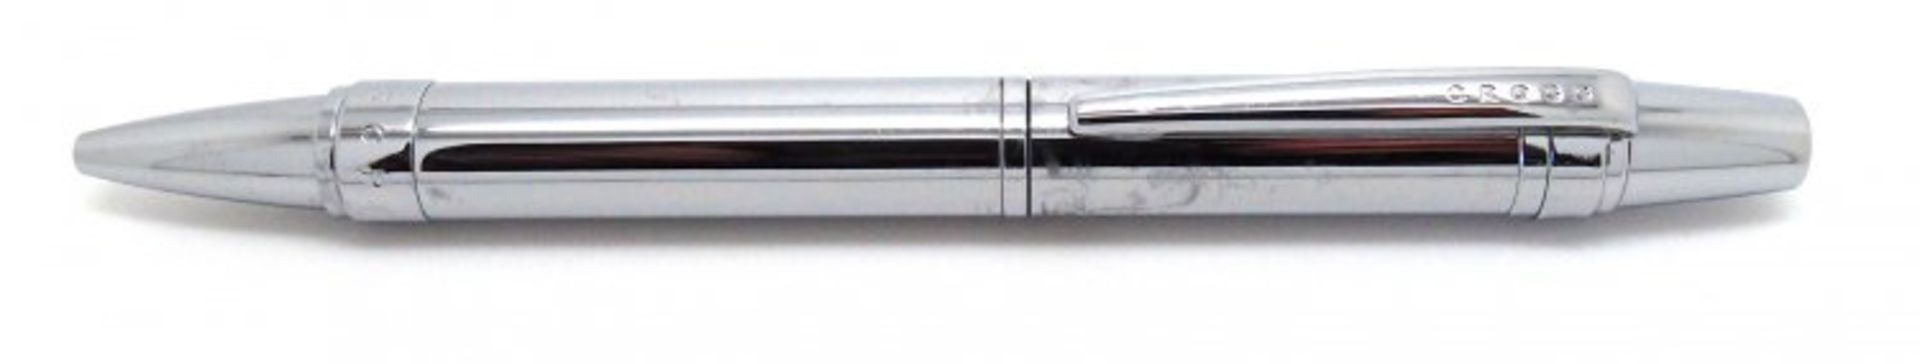 + VAT Brand New Cross Nile Pure Chrome Ballpoint Pen ISP Â£27.90 (Ebay) - Image 2 of 4